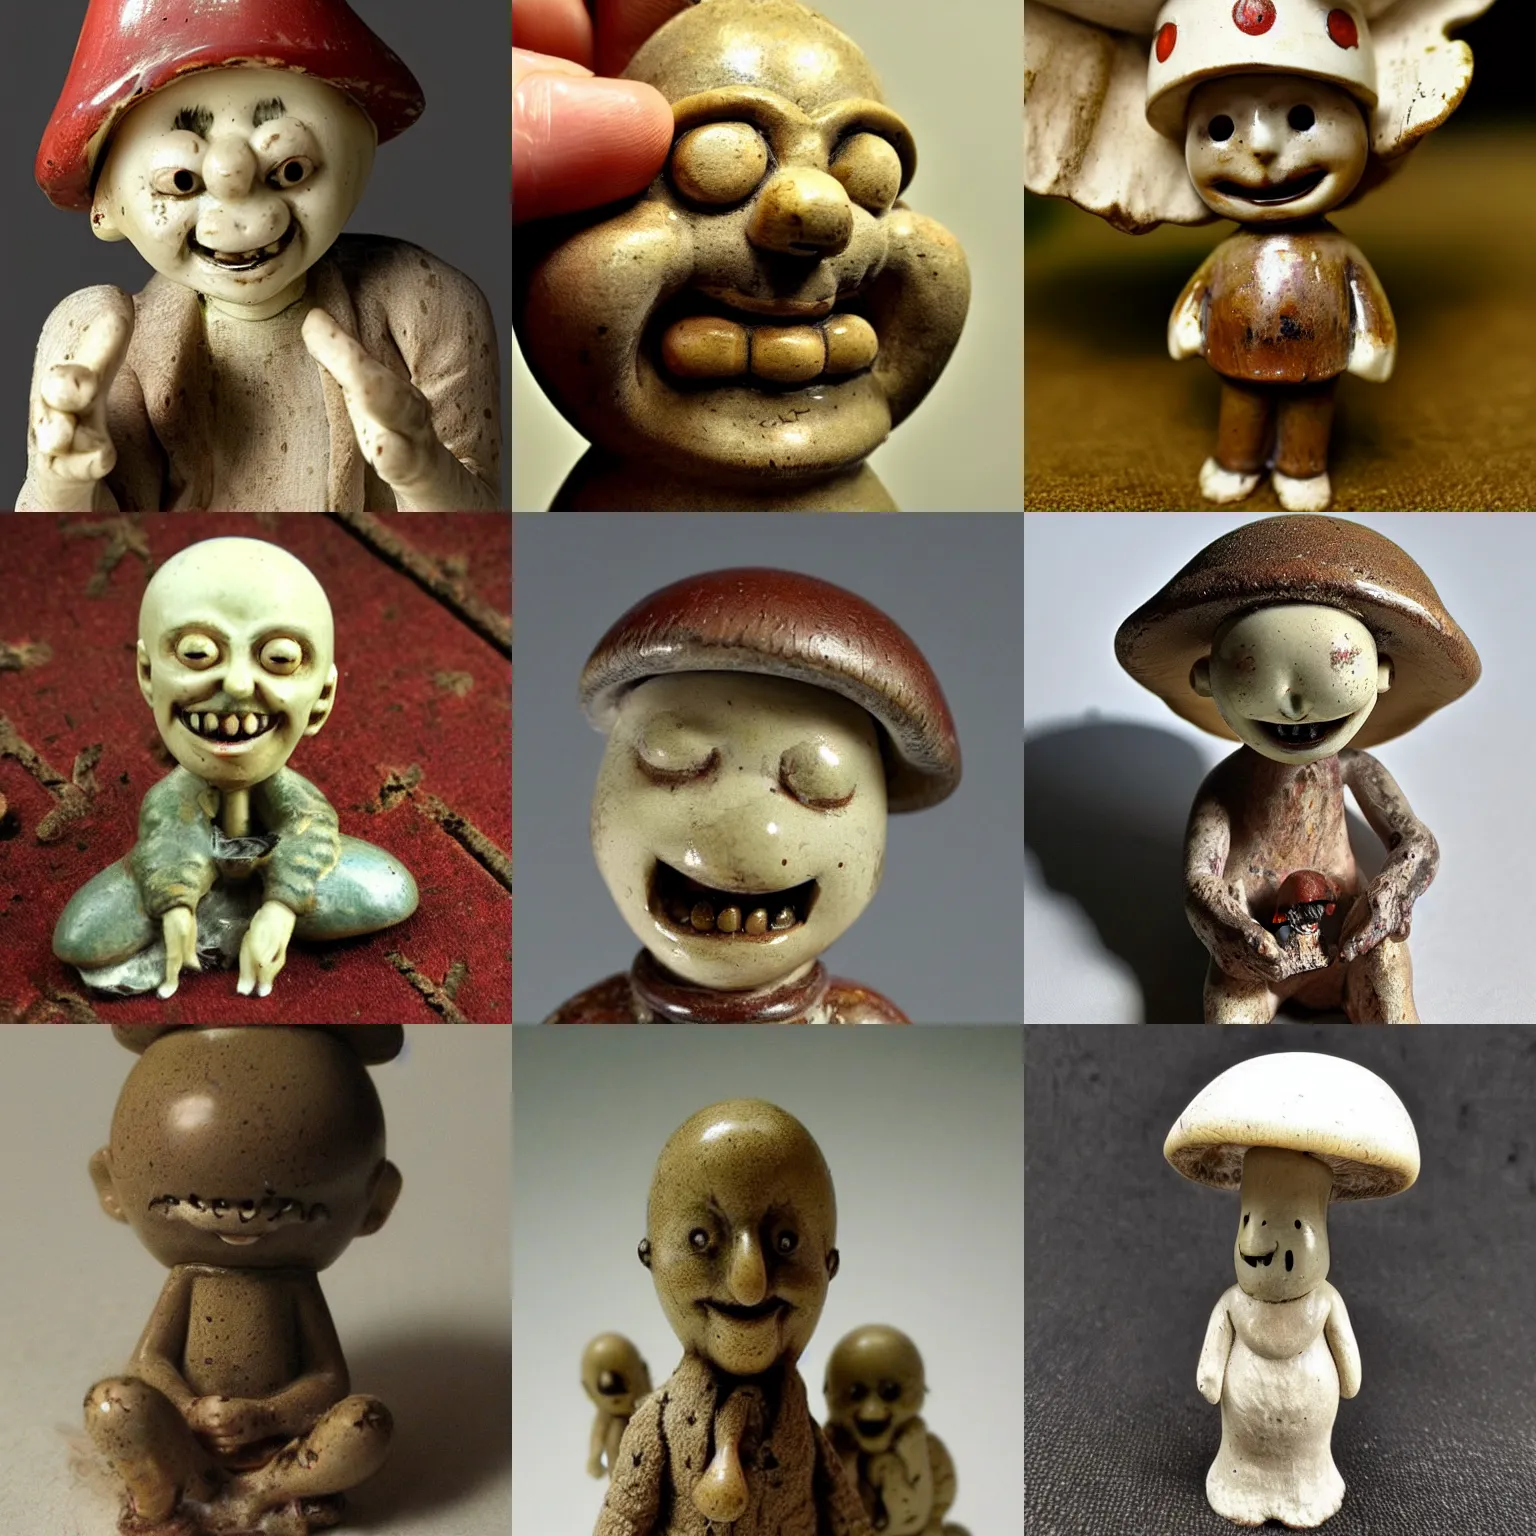 Prompt: anthropomorphic smiling! antique! mushroom!!! figurine, disturbing creepy cursed! macro photo